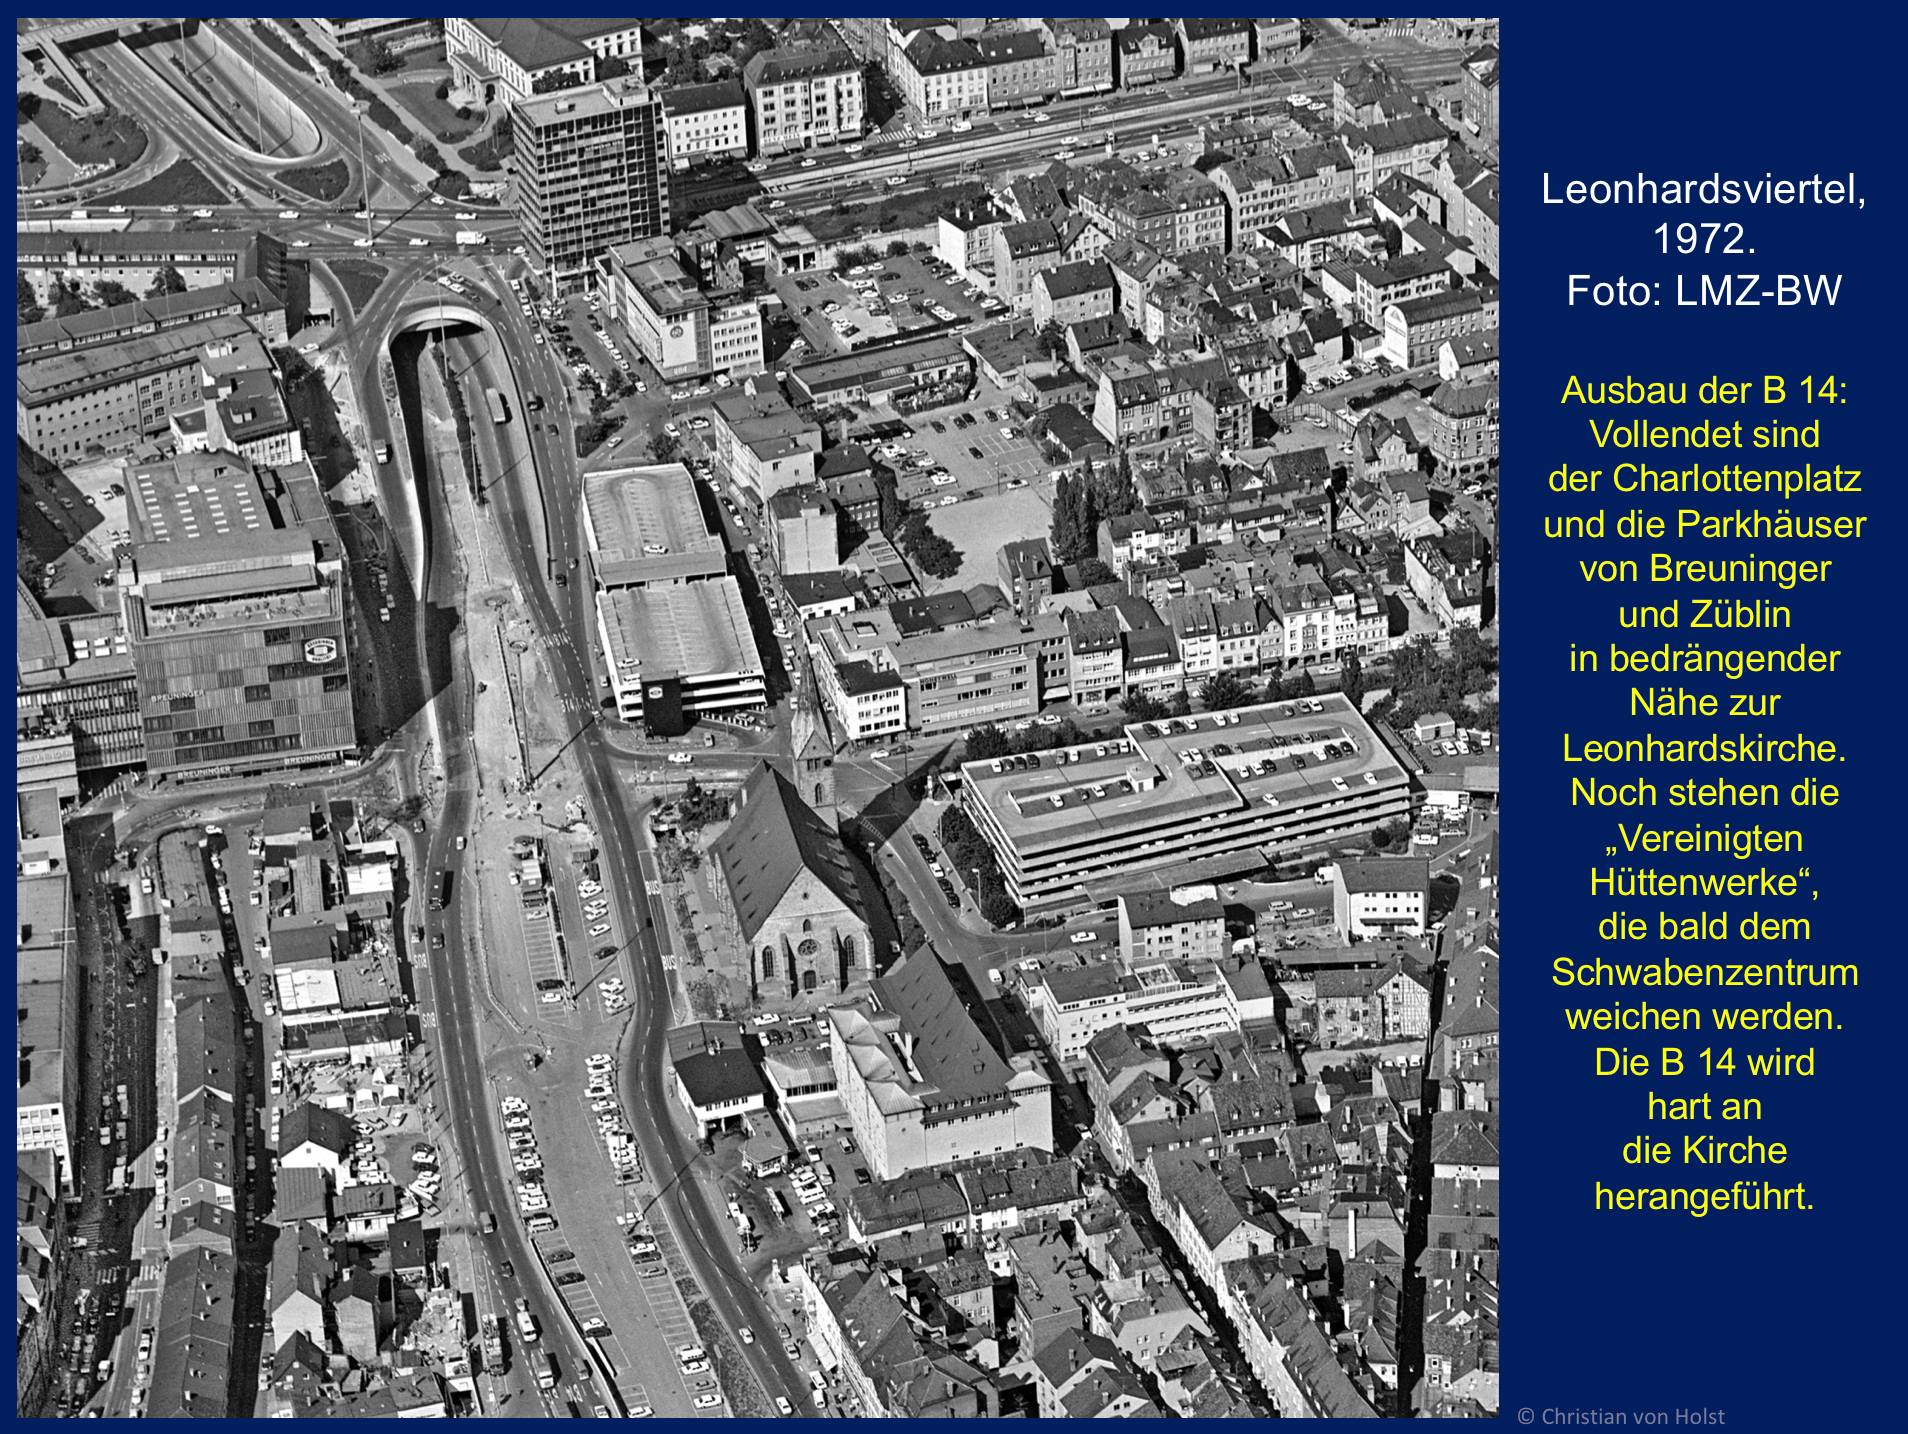 Luftbild 1972: das alte Leonhardsviertel im Wandlungsprozess zum autogerechten Viertele